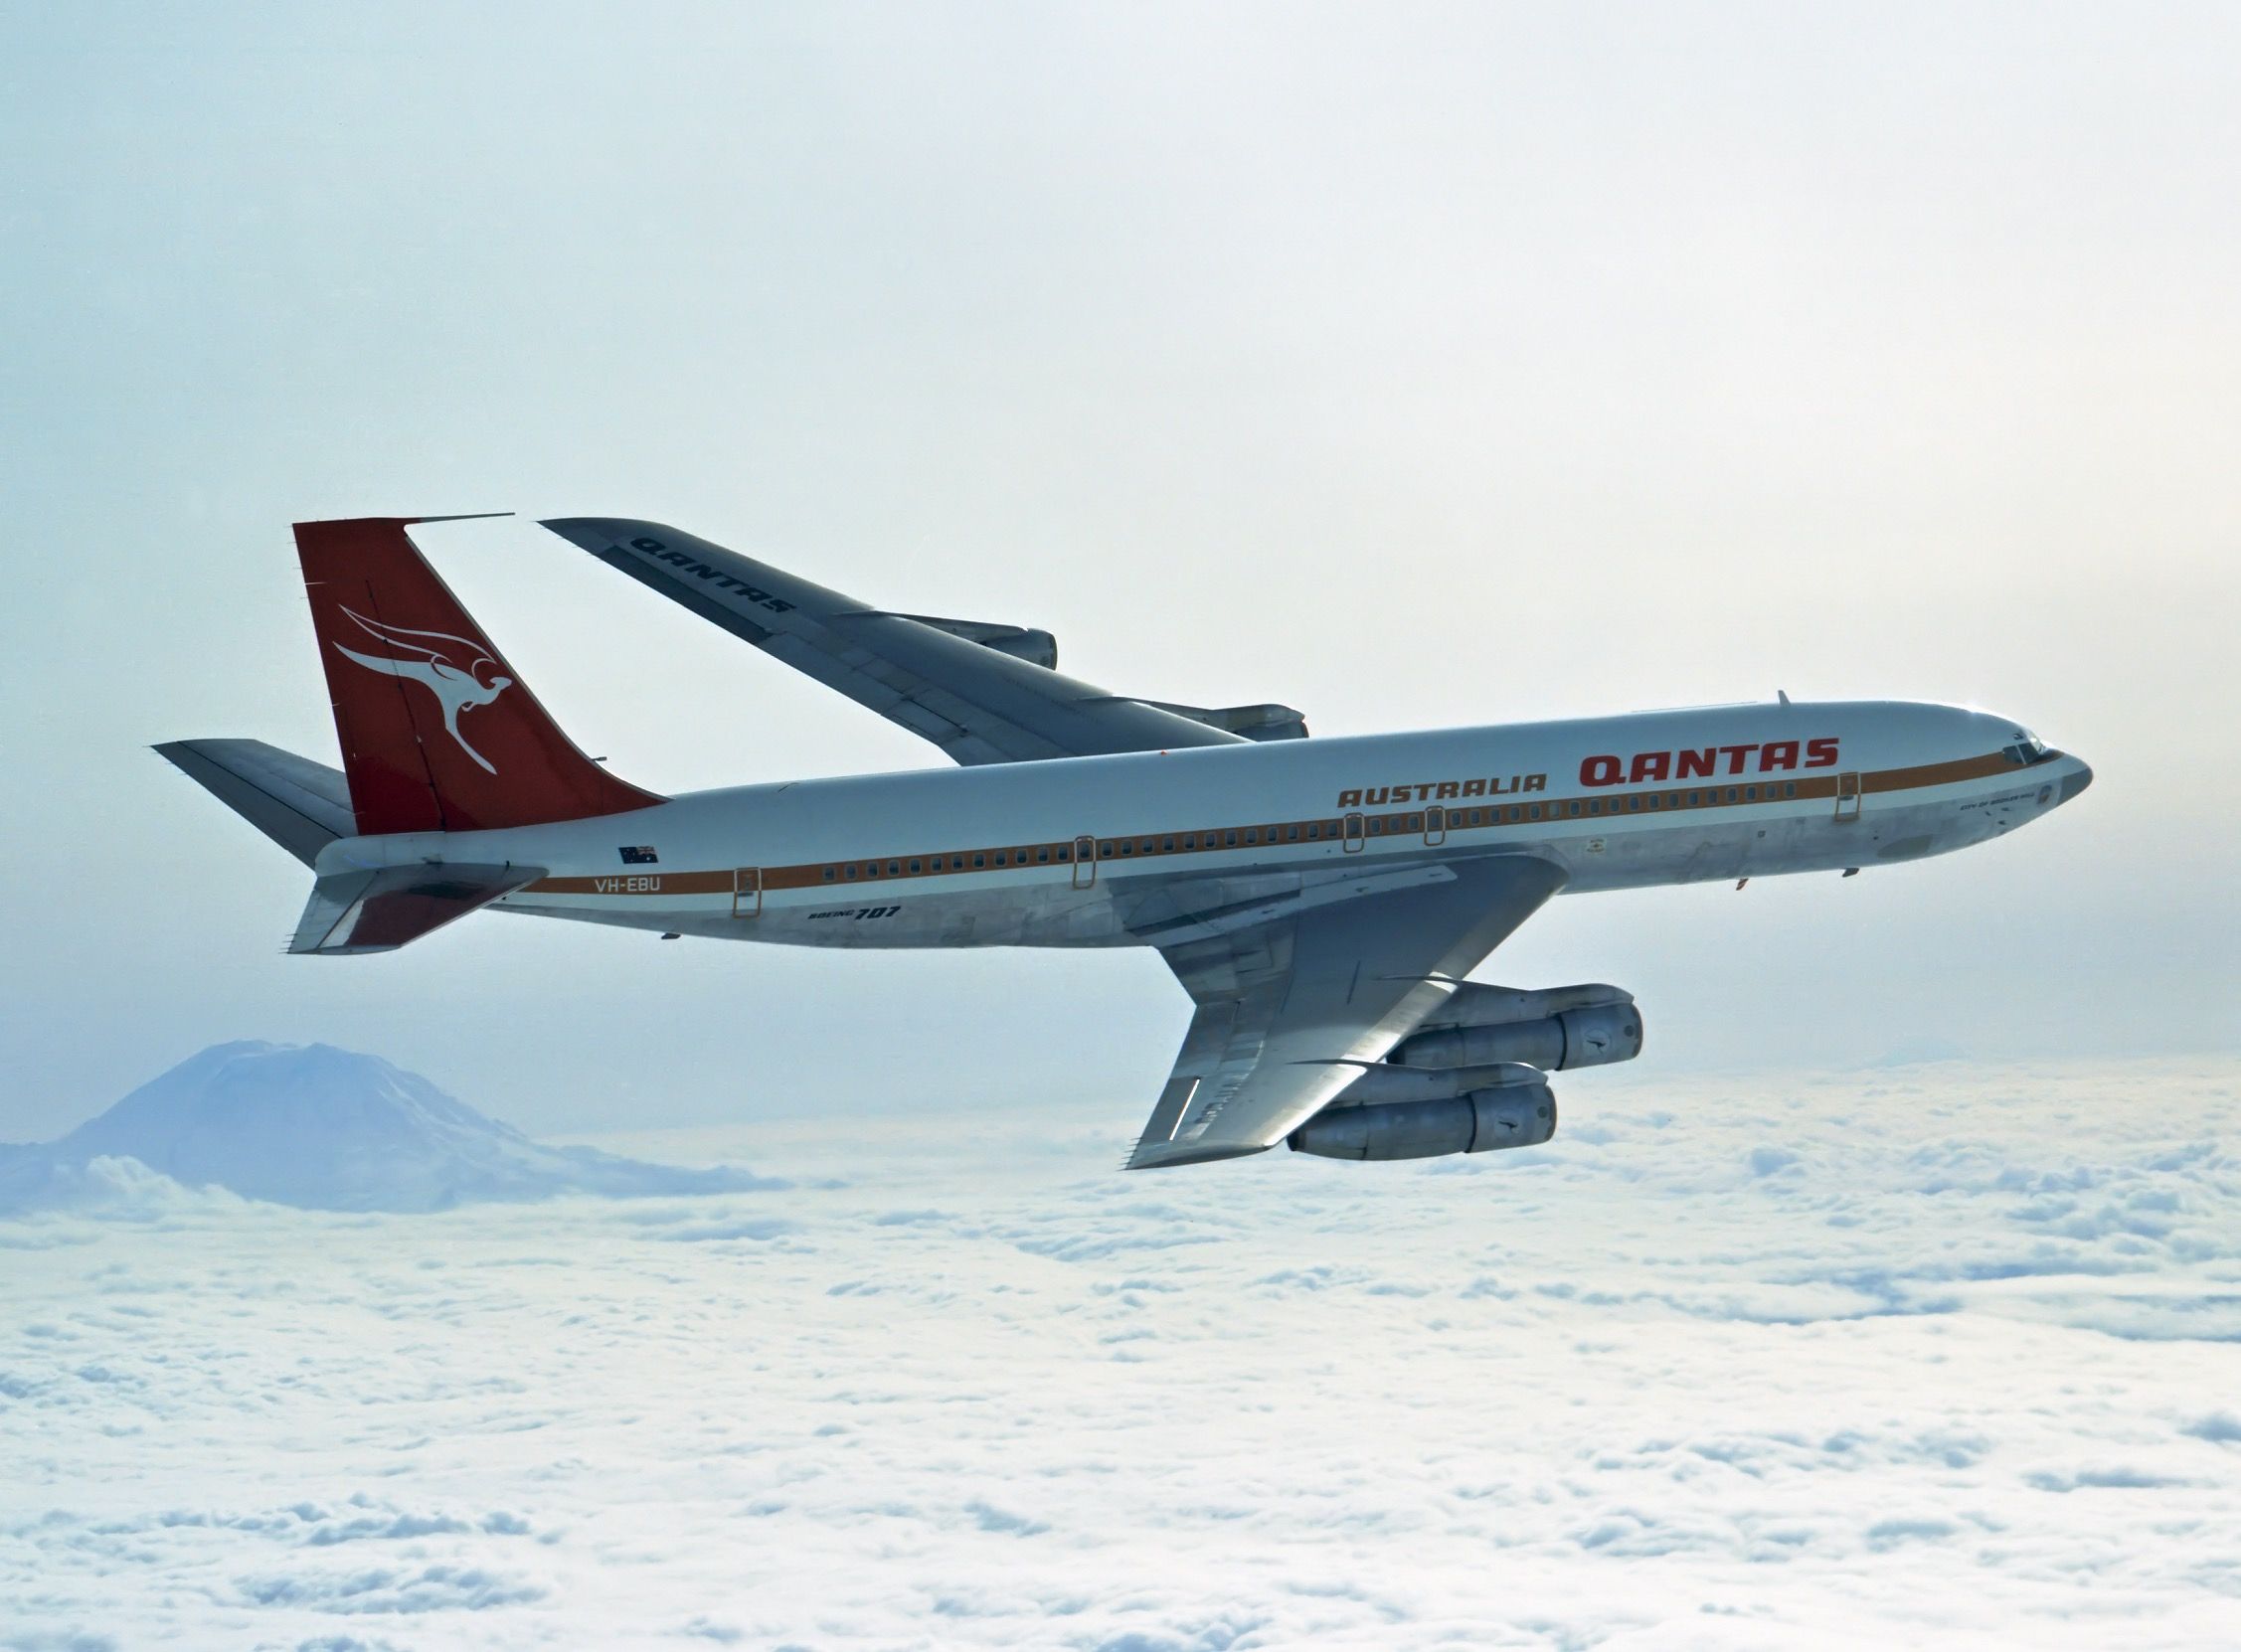 VH-EBU flies for Qantas